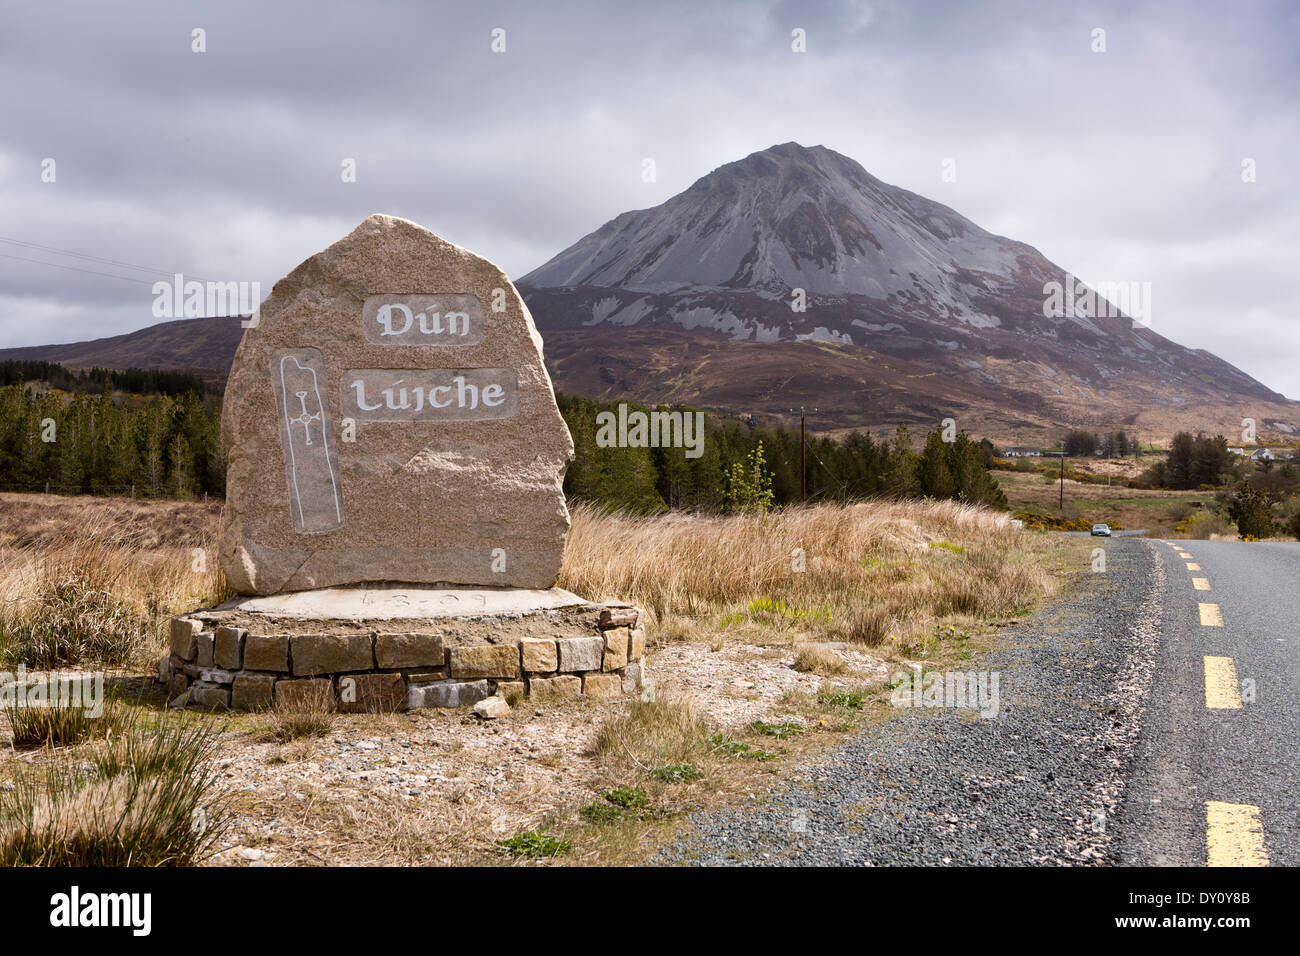 L'Irlande, Co Donegal, Dunlewey, Mount Errigal, la deuxième plus haute montagne d'Irlande, Dun Luiche Irish language sign Banque D'Images